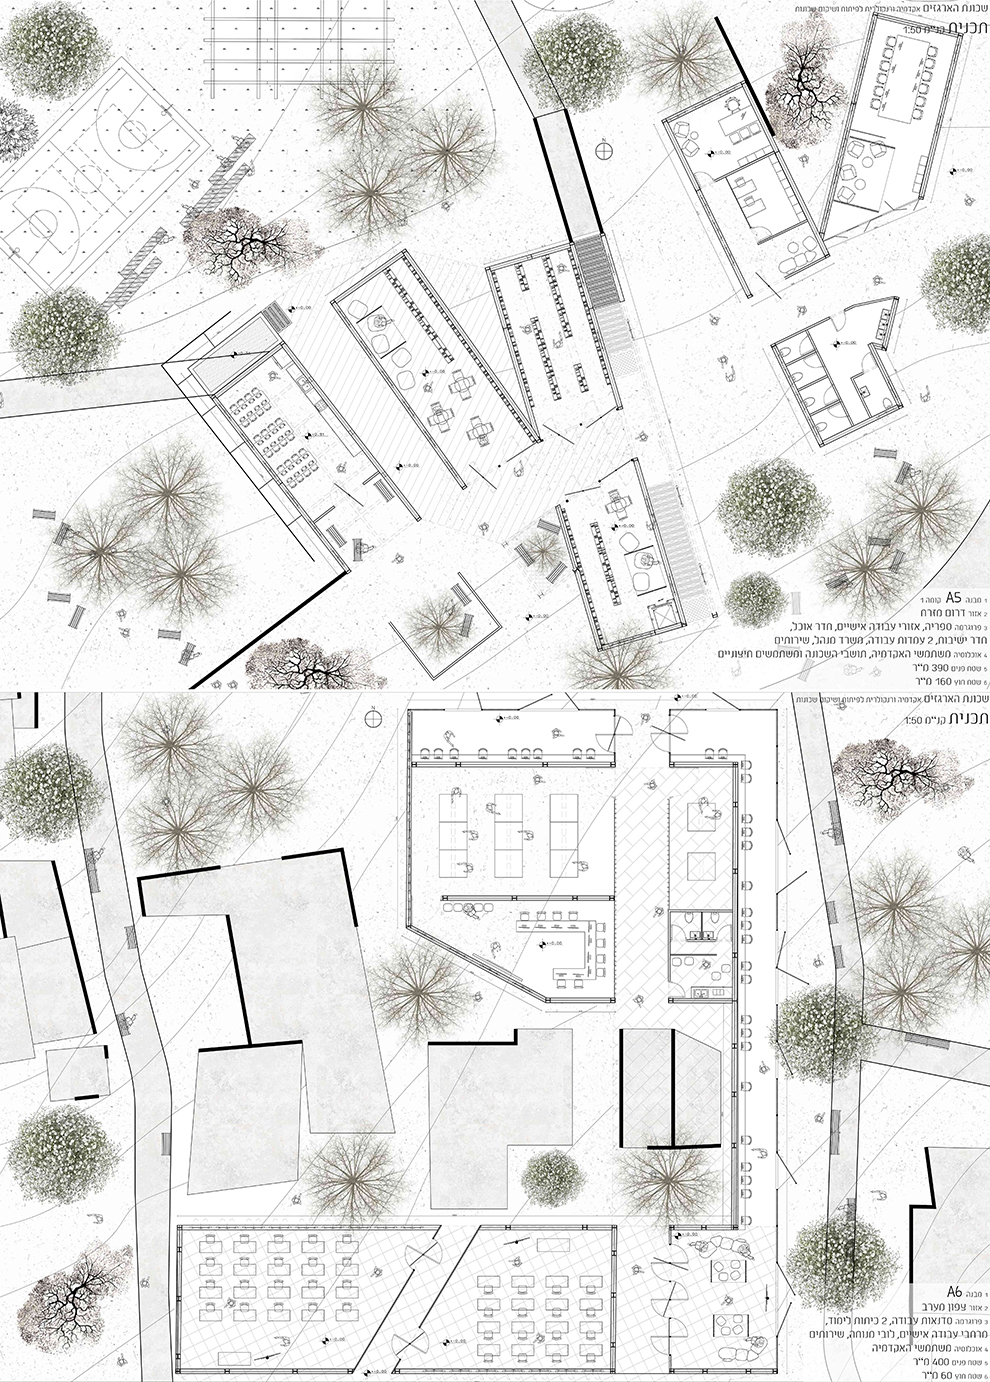 הפרויקט של רוי שירזי דרי: שכונת הארגזים | אקדמיה ורנקולרית לפיתוח ושיקום שכונות